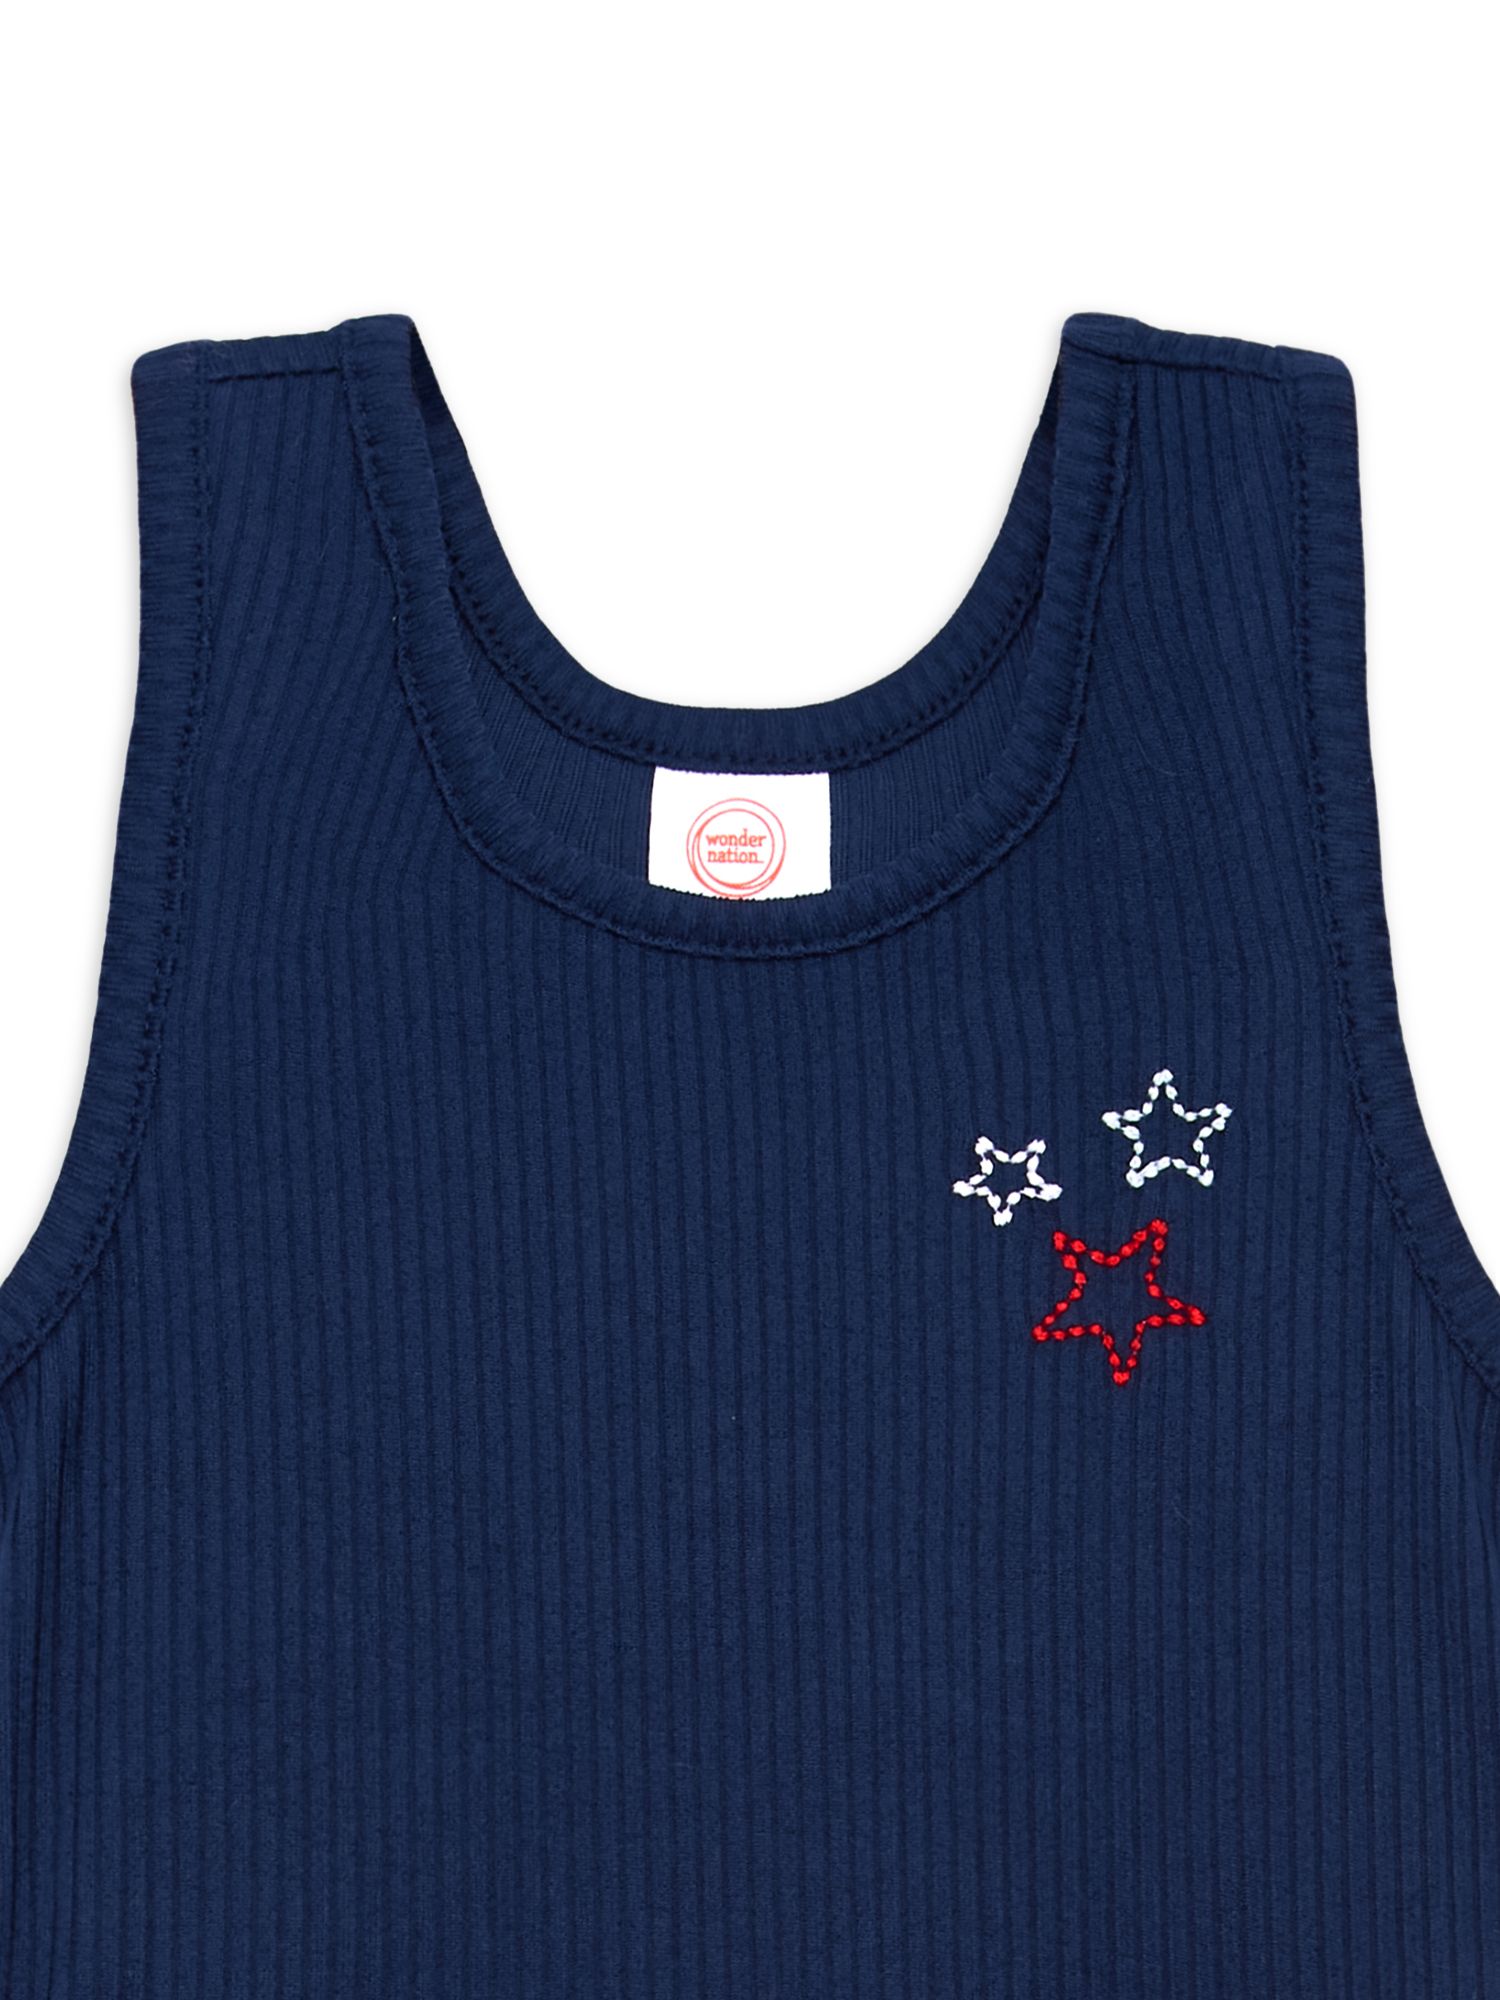 Wonder Nation Toddler Girls’ Americana Tutu Dress, Sizes 12M-5T | Walmart (US)